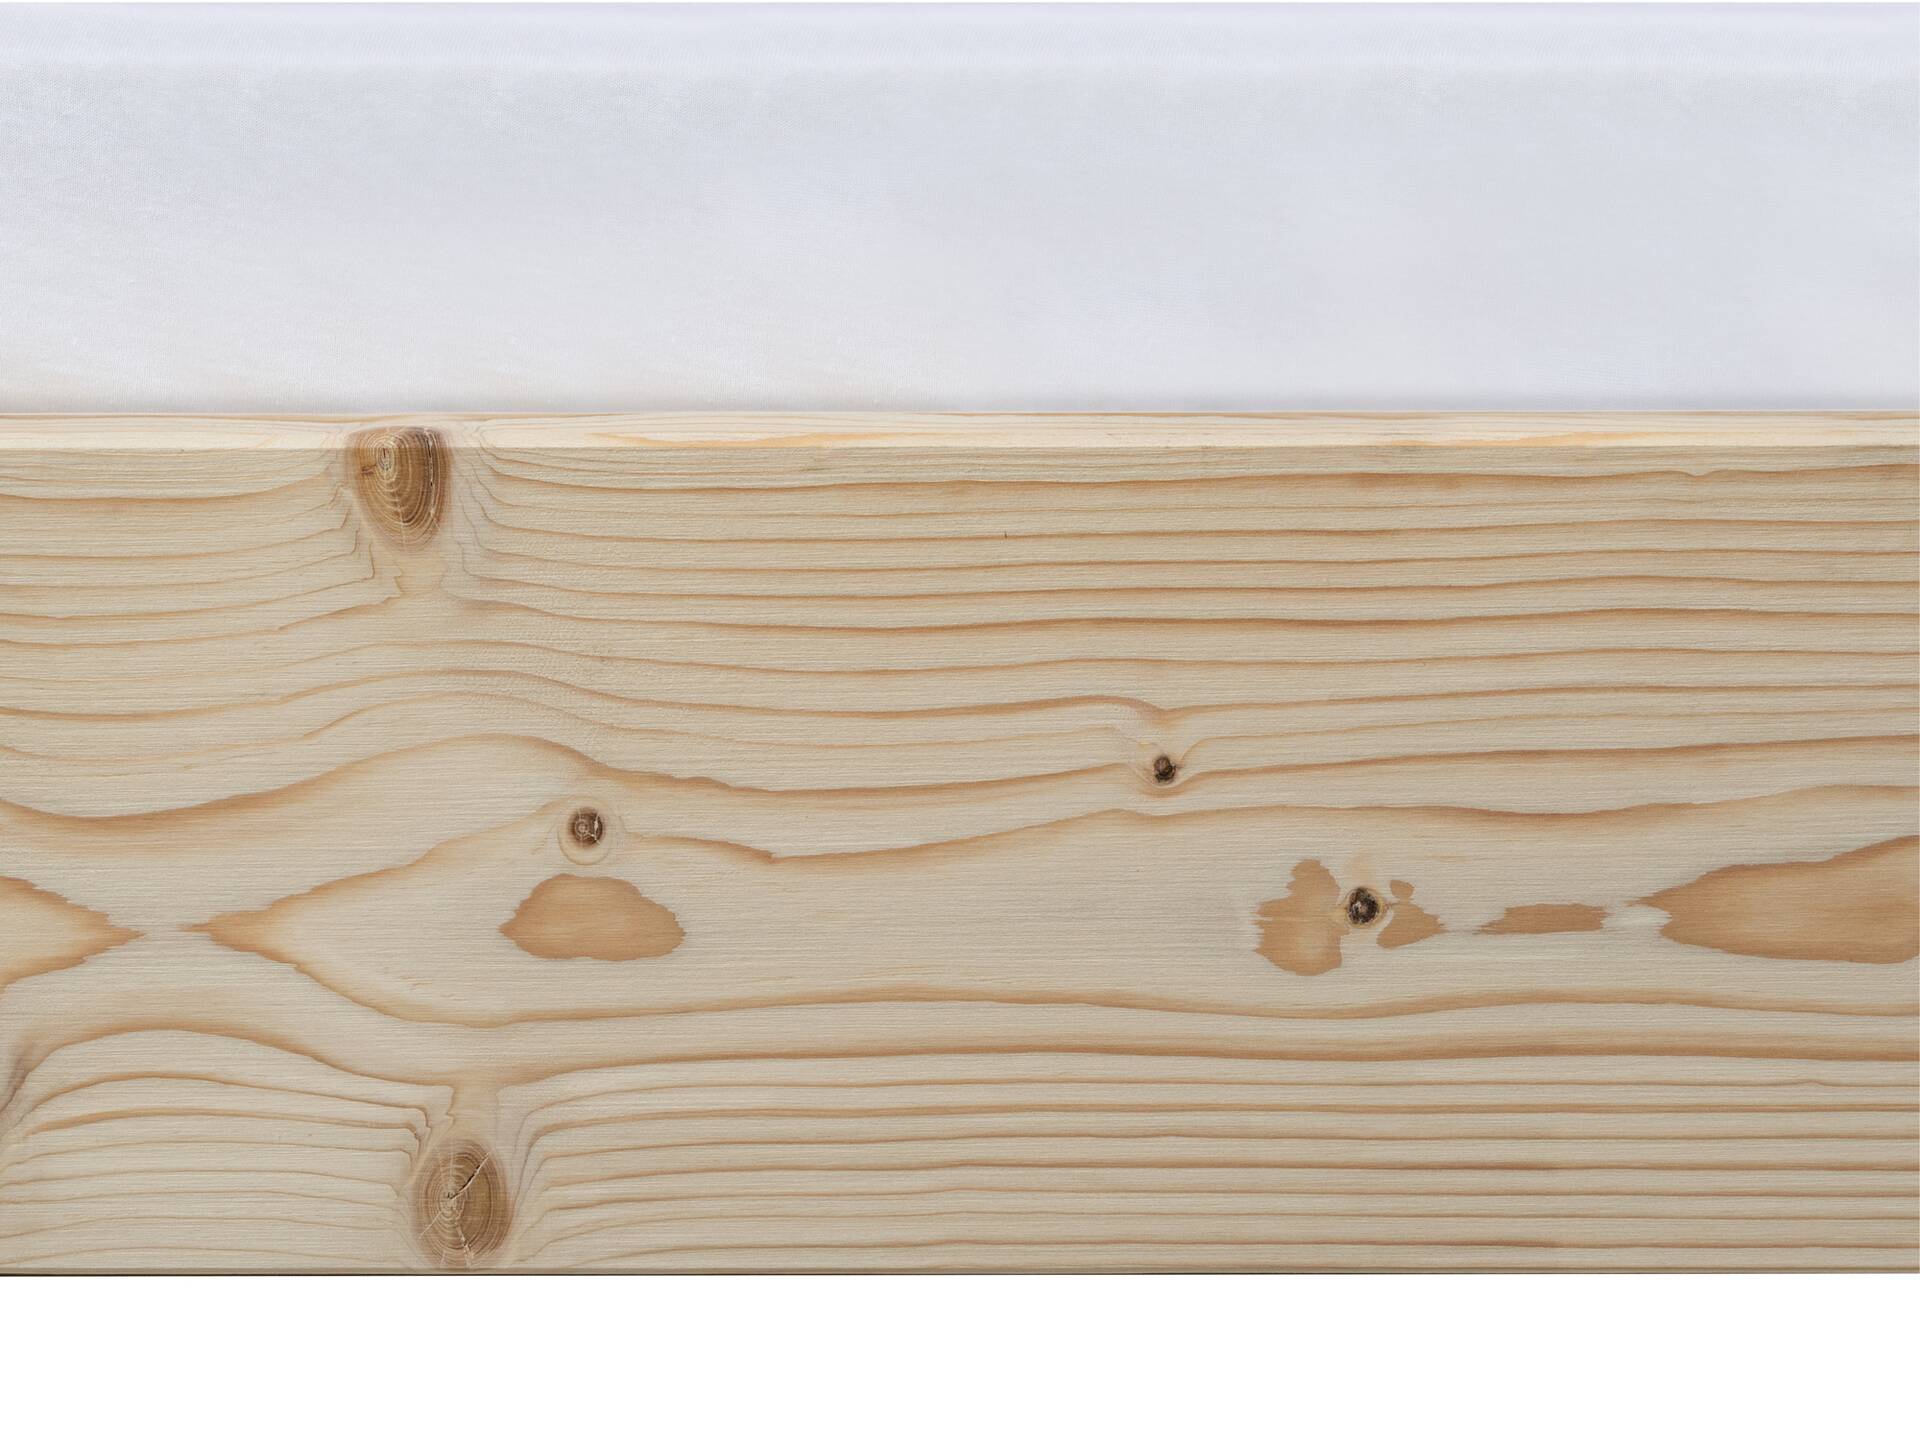 LUKY Kufenbett mit Polsterkopfteil, Material Massivholz, Fichte massiv, Kufen weiss 120 x 200 cm | natur | Stoff Braun